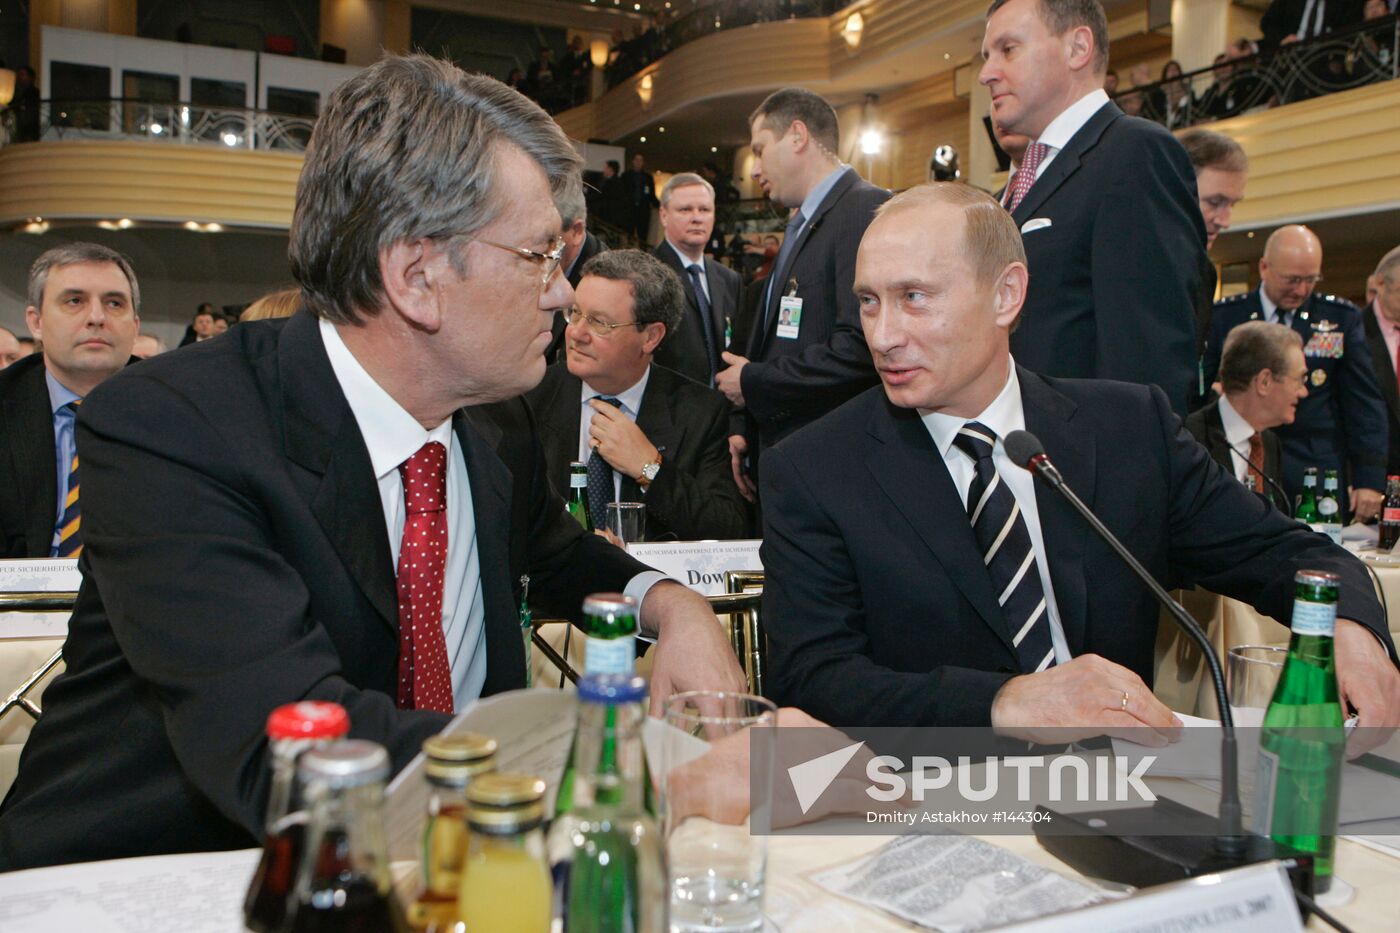 Vladimir Putin and Viktor Yushchenko 